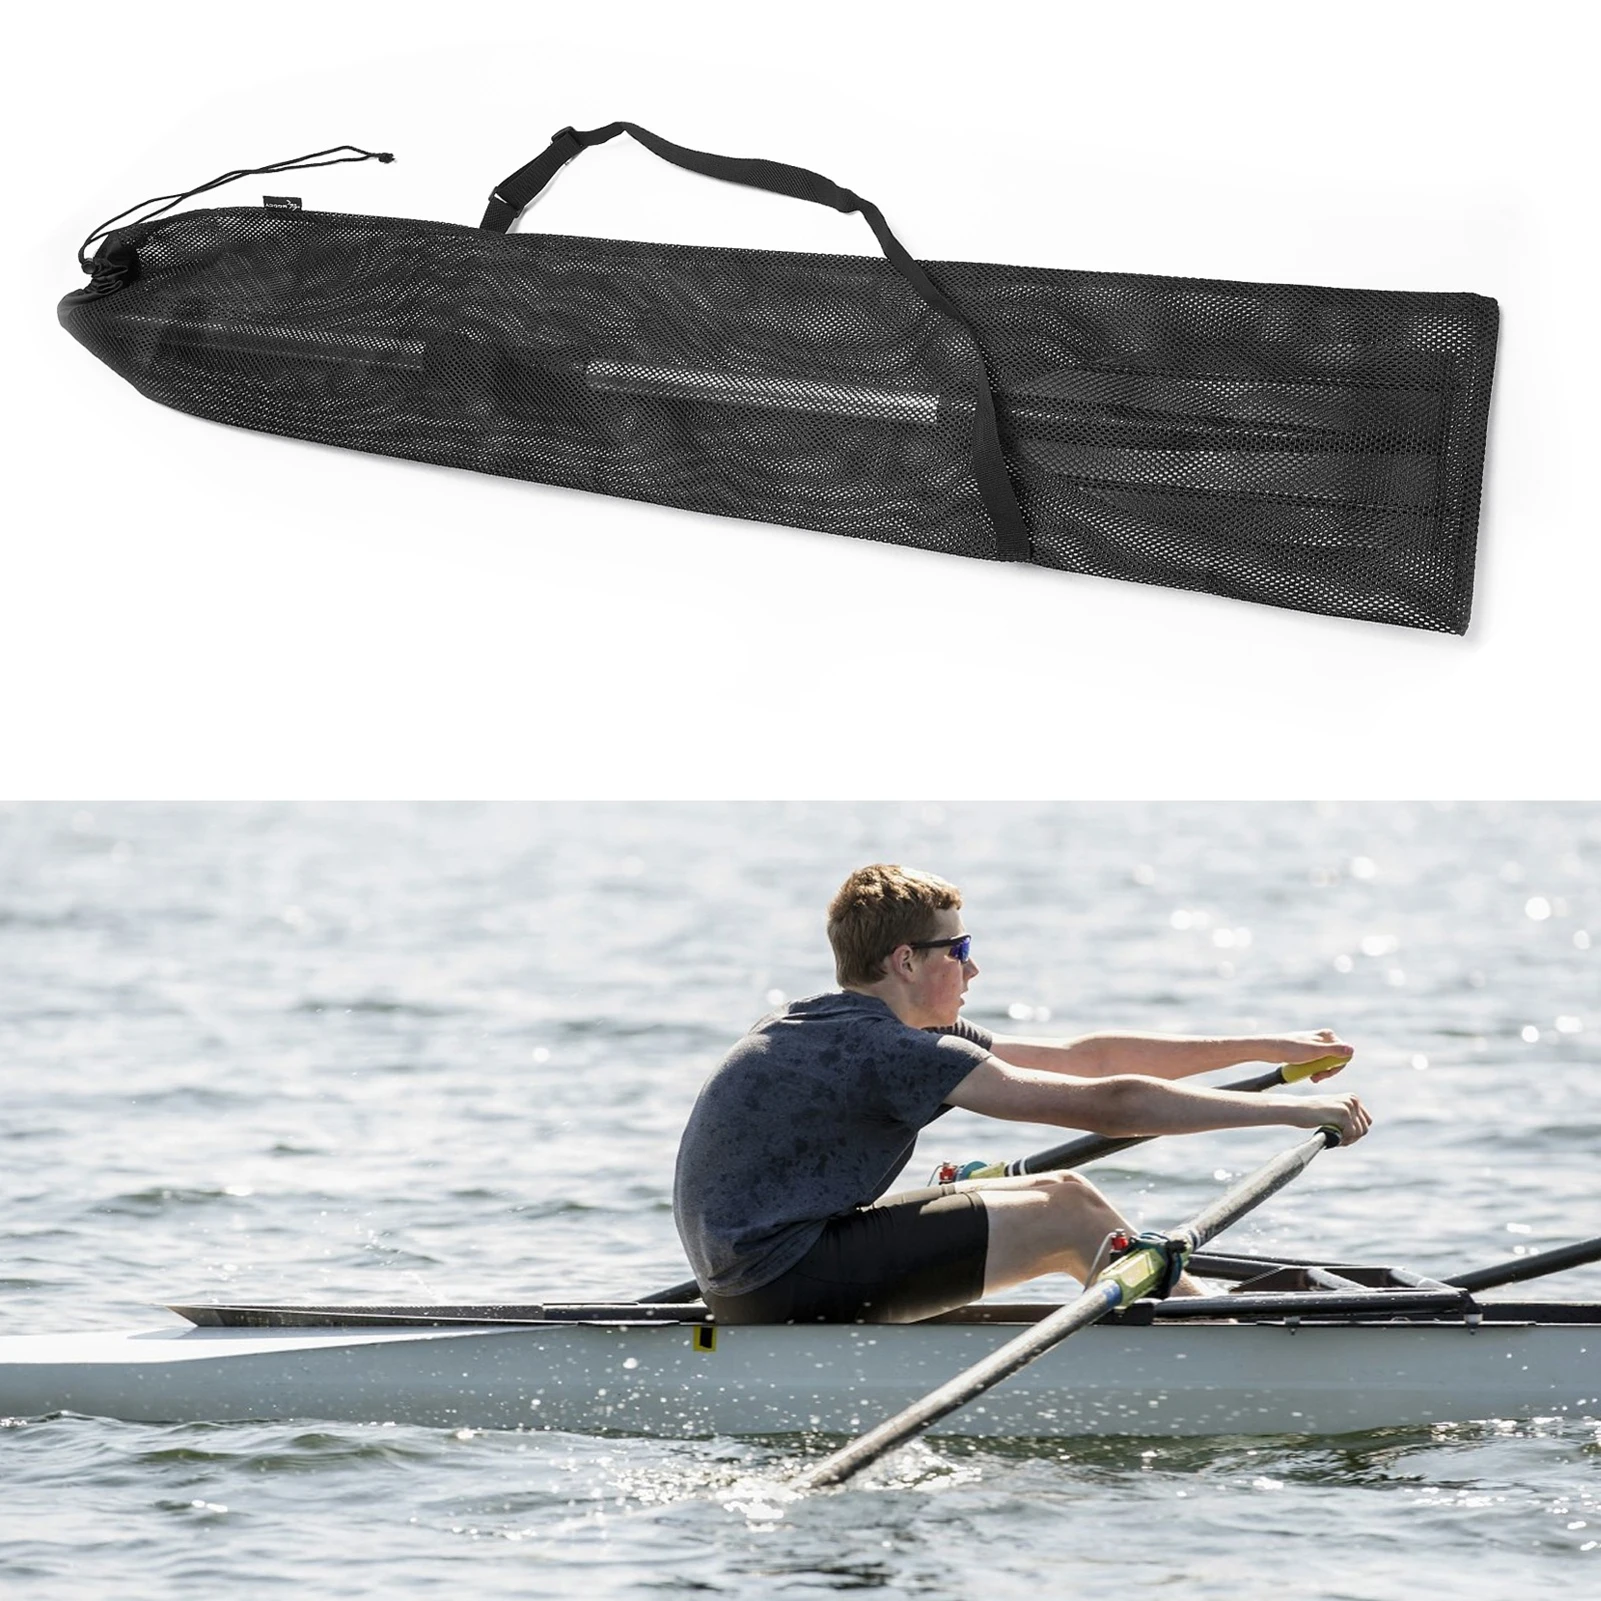 

Черная Фотосумка, портативная складная сетчатая лодка для байдарки, лодки, лопатки для каноэ, с регулируемым плечевым ремнем для 2 весла